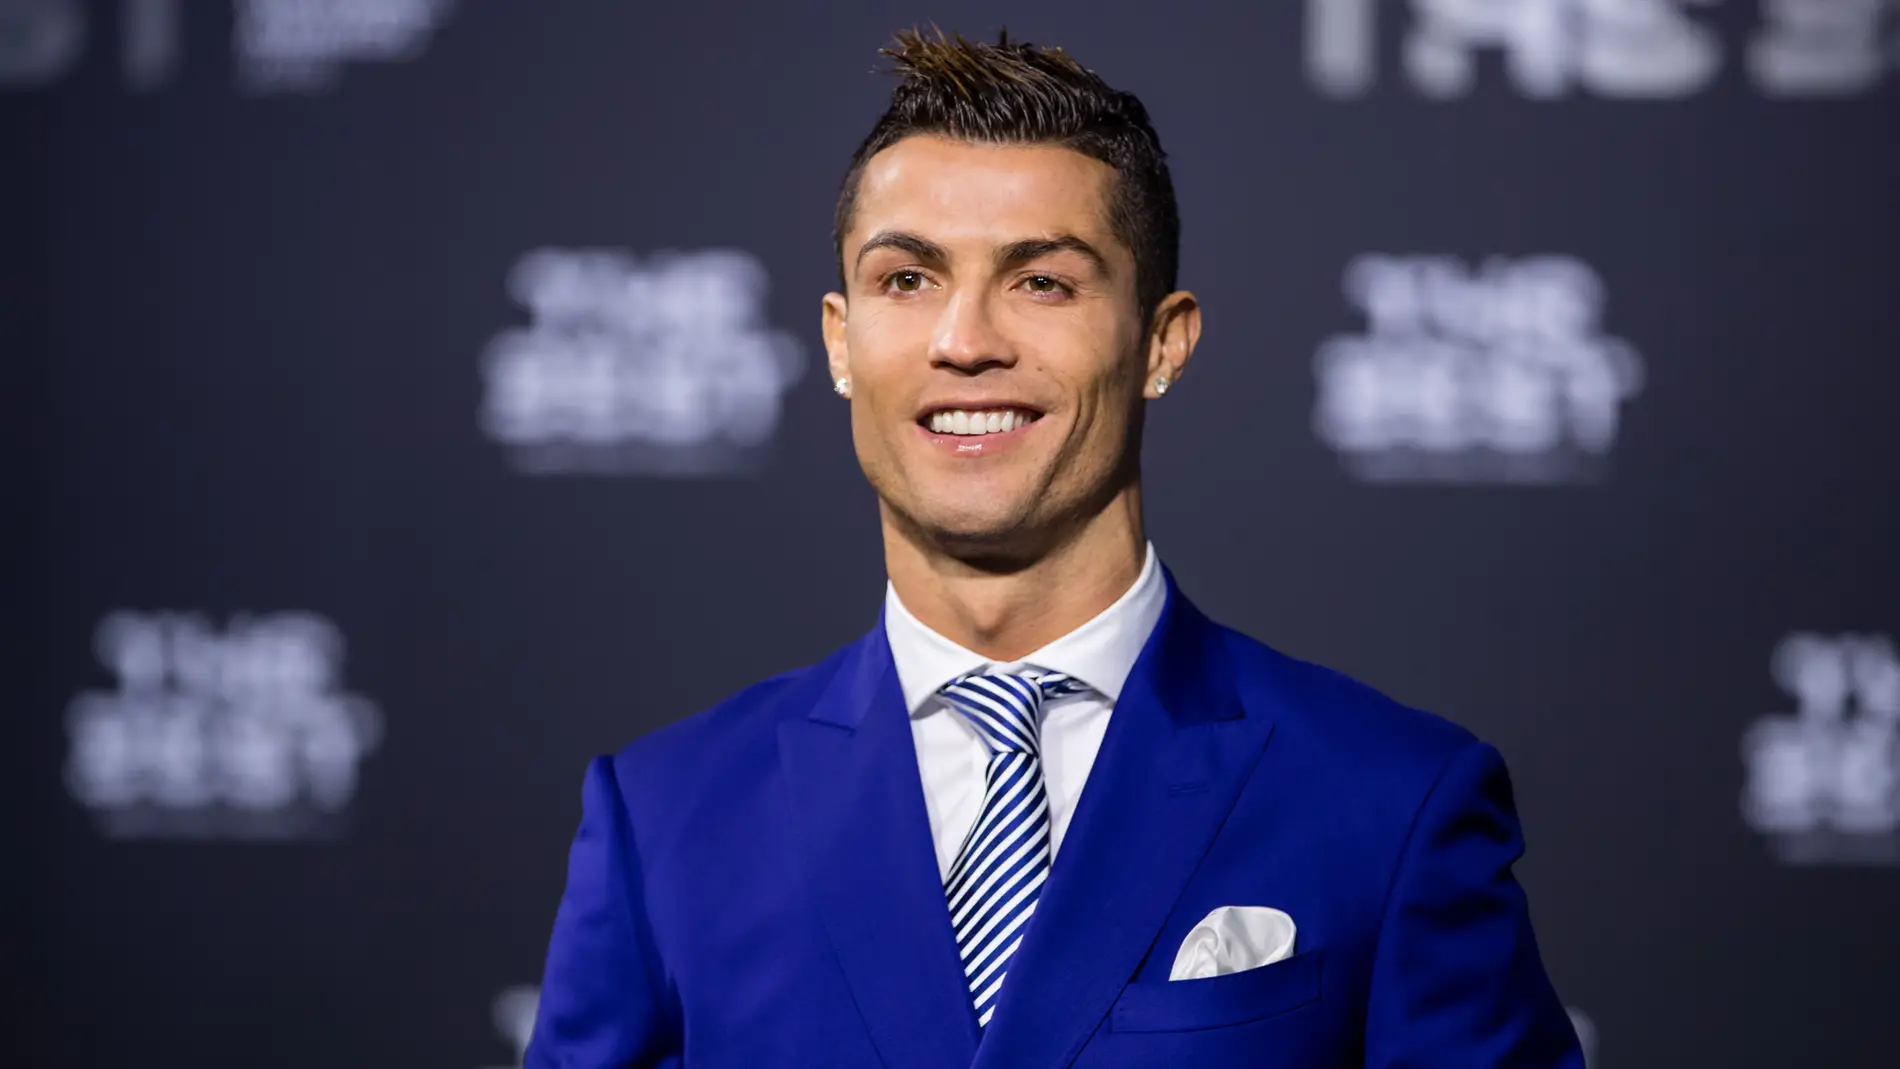 Cristiano Ronaldo posando en los premios 'The Best'